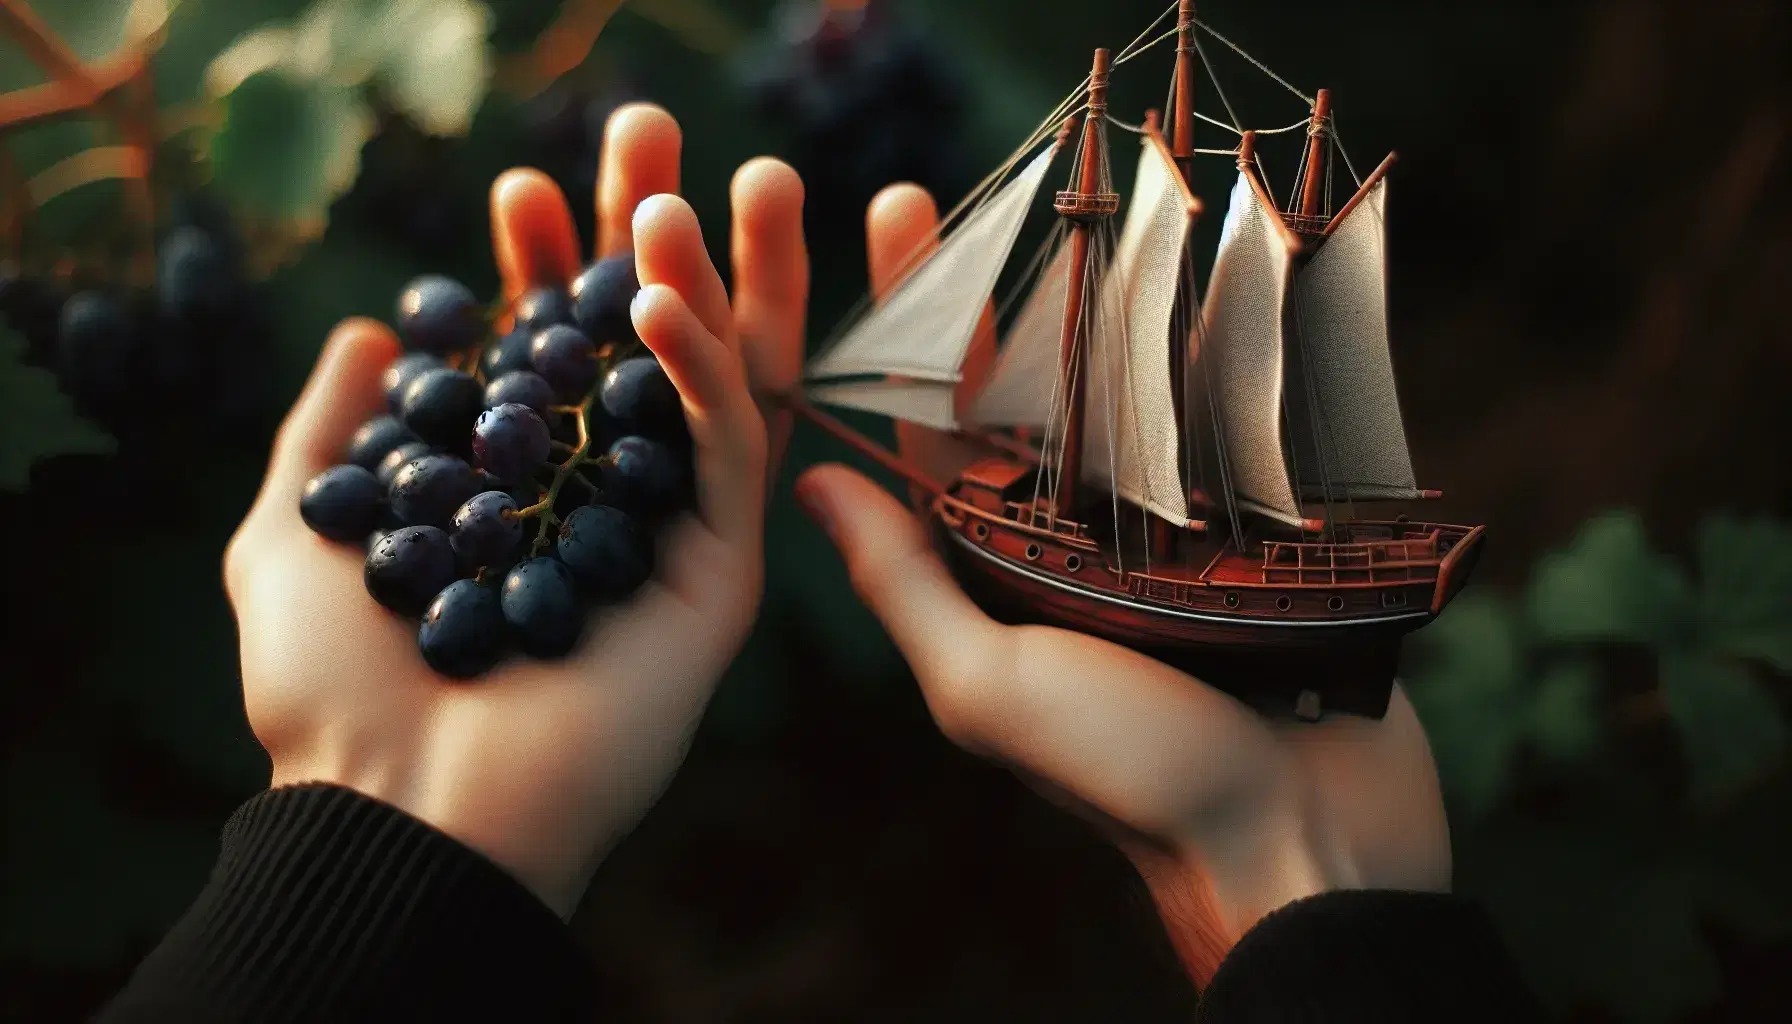 Manos intercambiando uvas frescas y maqueta de barco de madera en un entorno natural con luz suave, destacando detalles y texturas.